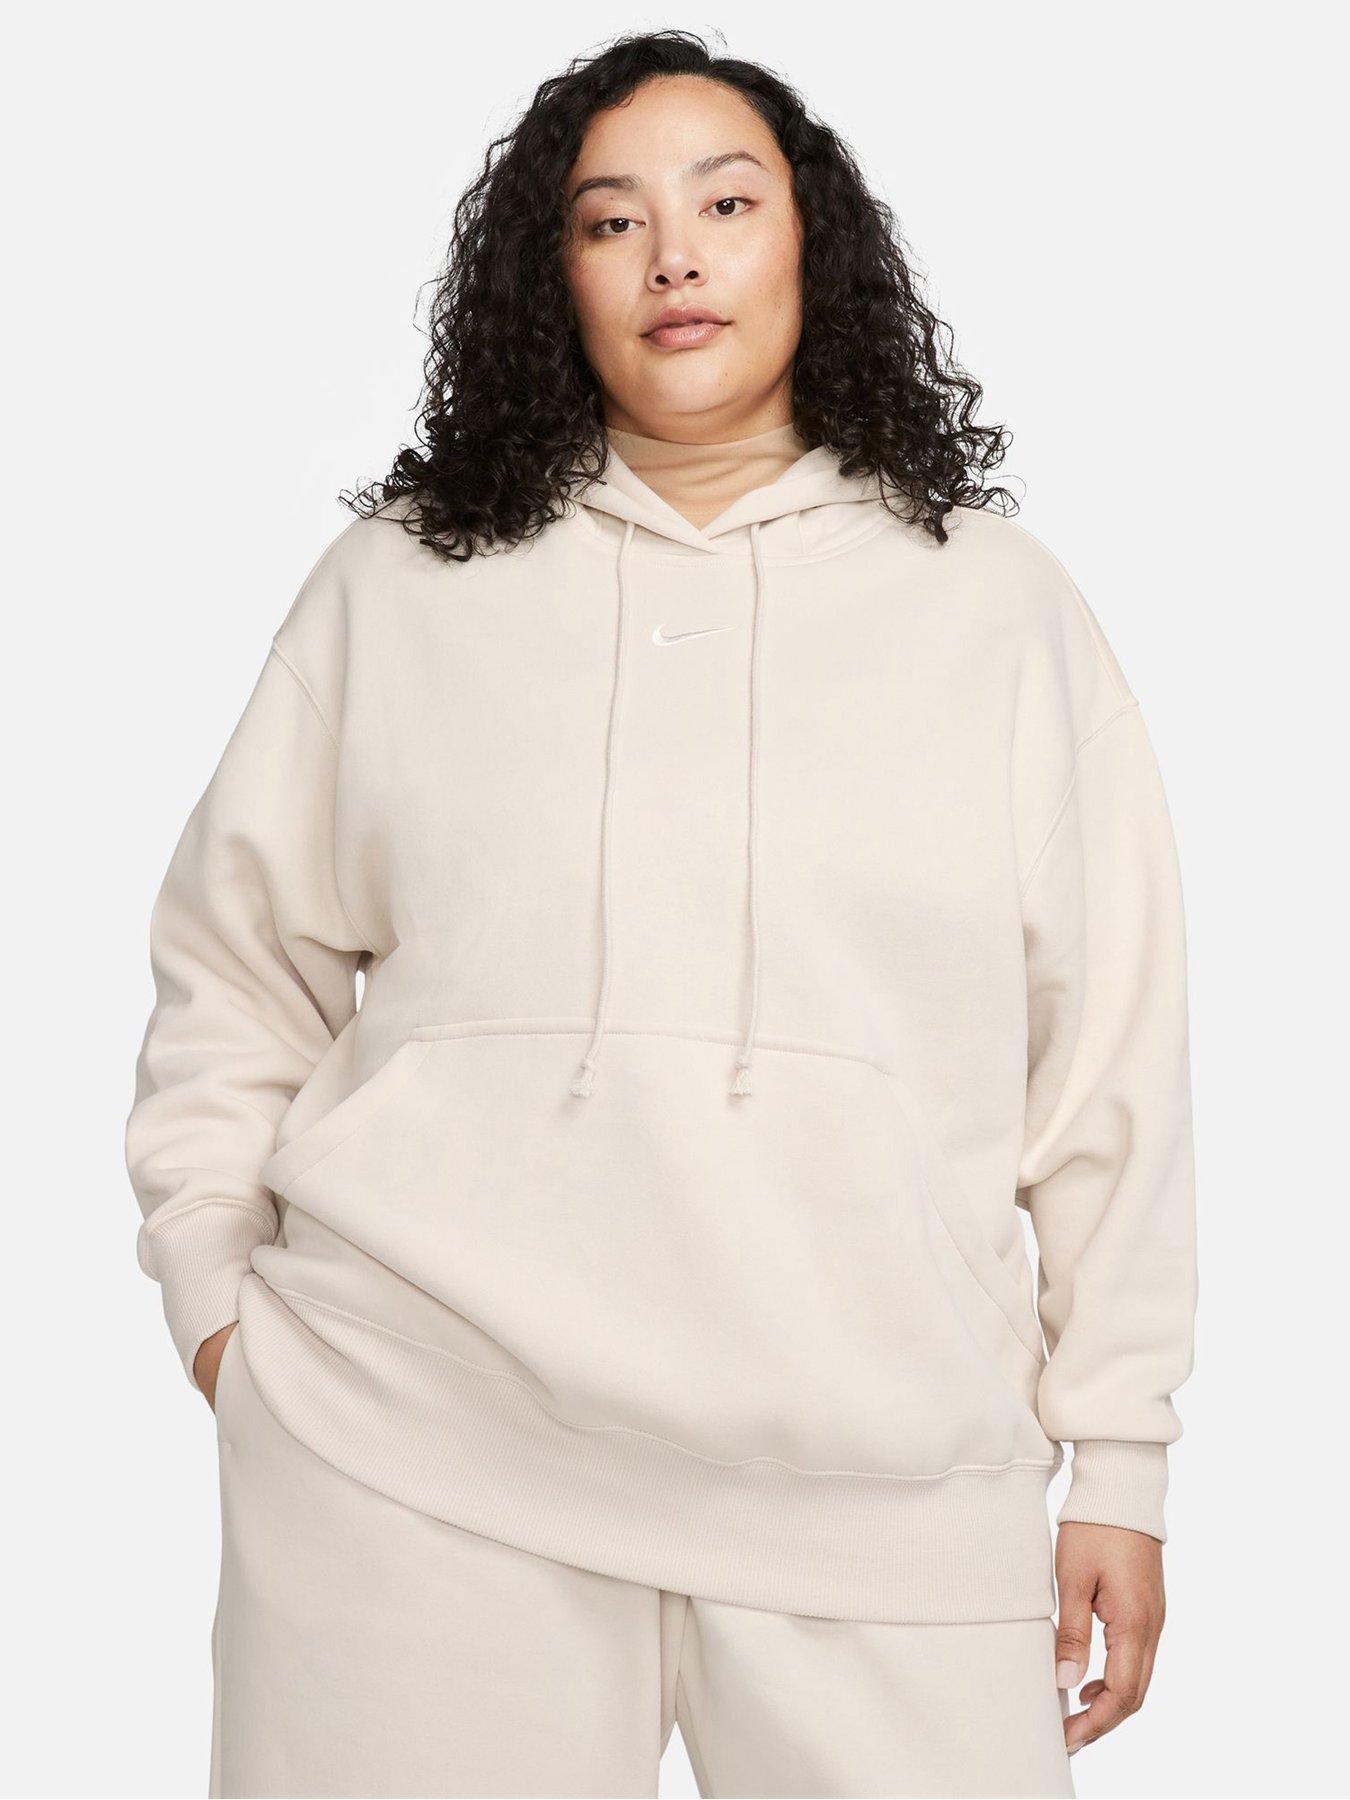 Women's UK Size XL Hoodies & Sweatshirts